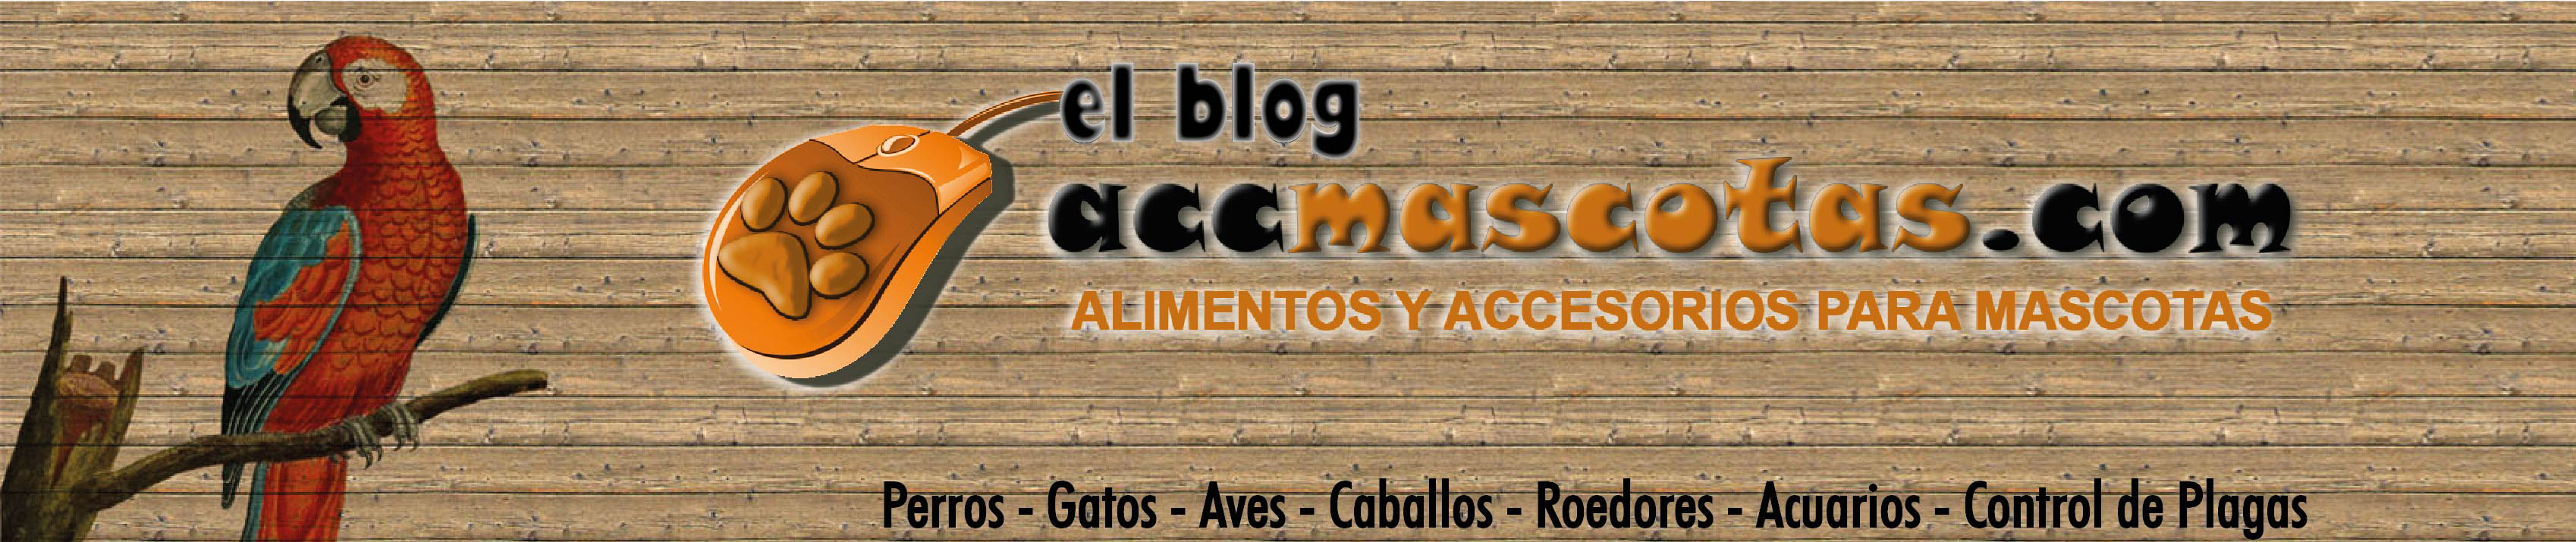 AccMascotas El Blog